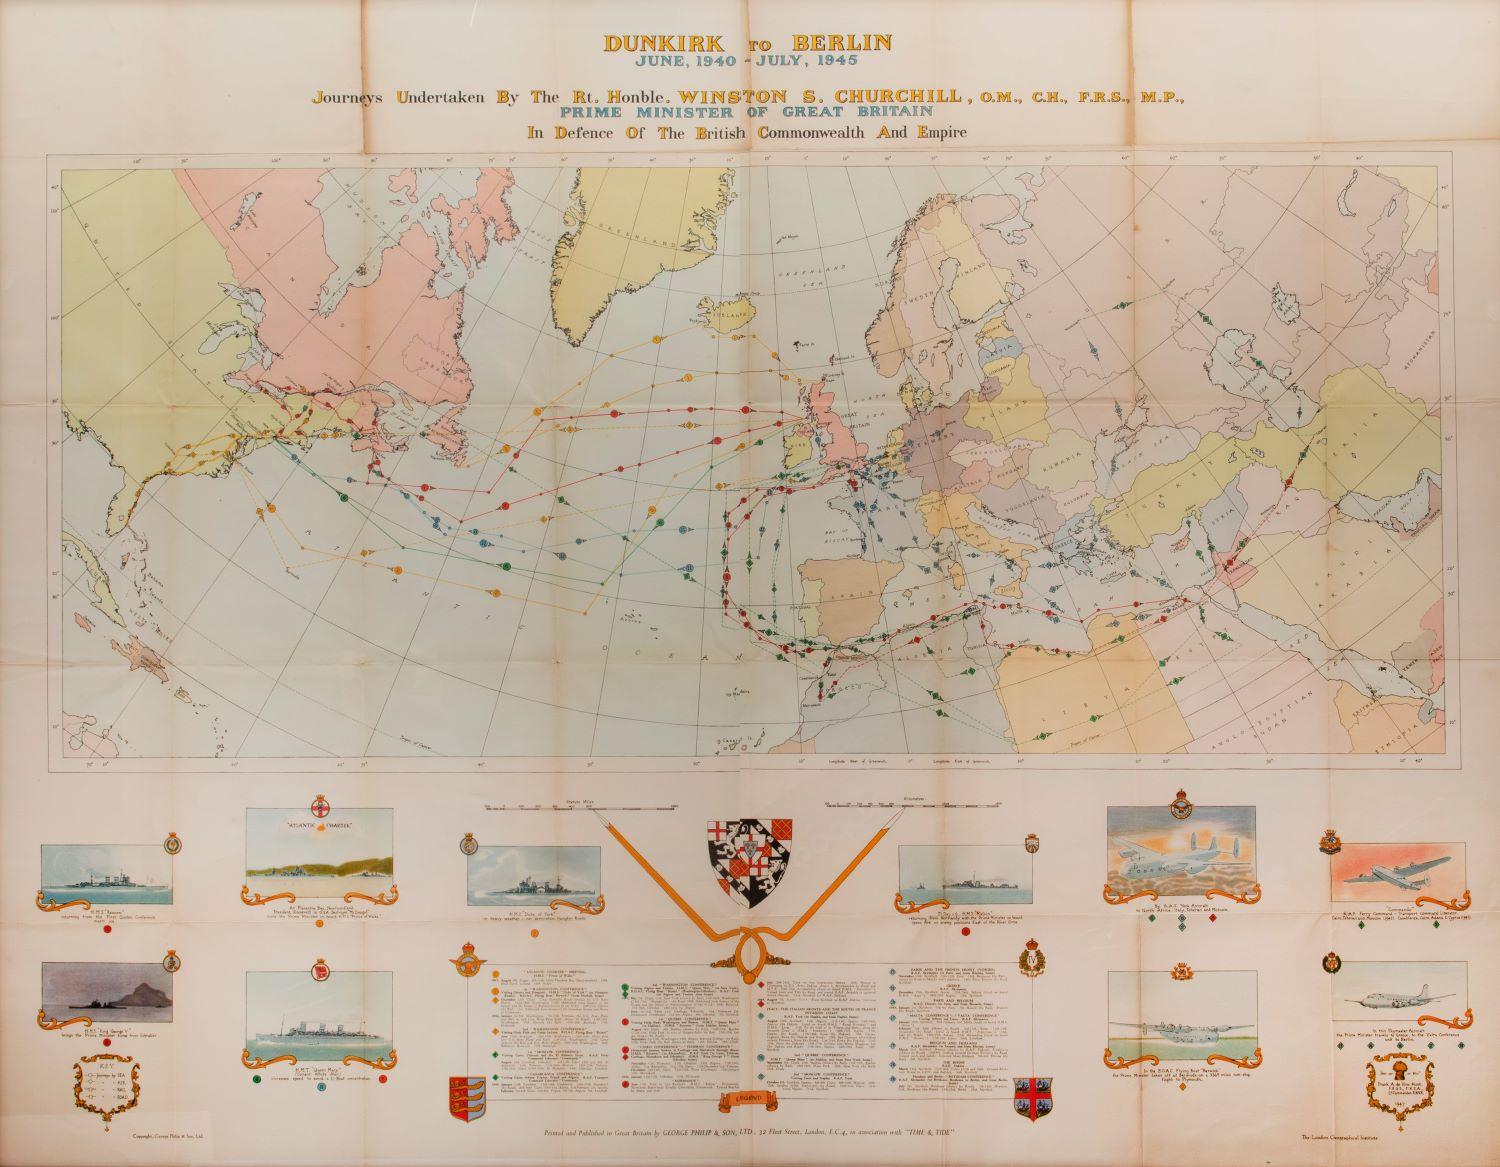 [Karte aus dem Zweiten Weltkrieg] – Dunkirk nach Berlin, Juni 1940. (Sonstige Kunststile), Art, von Unknown